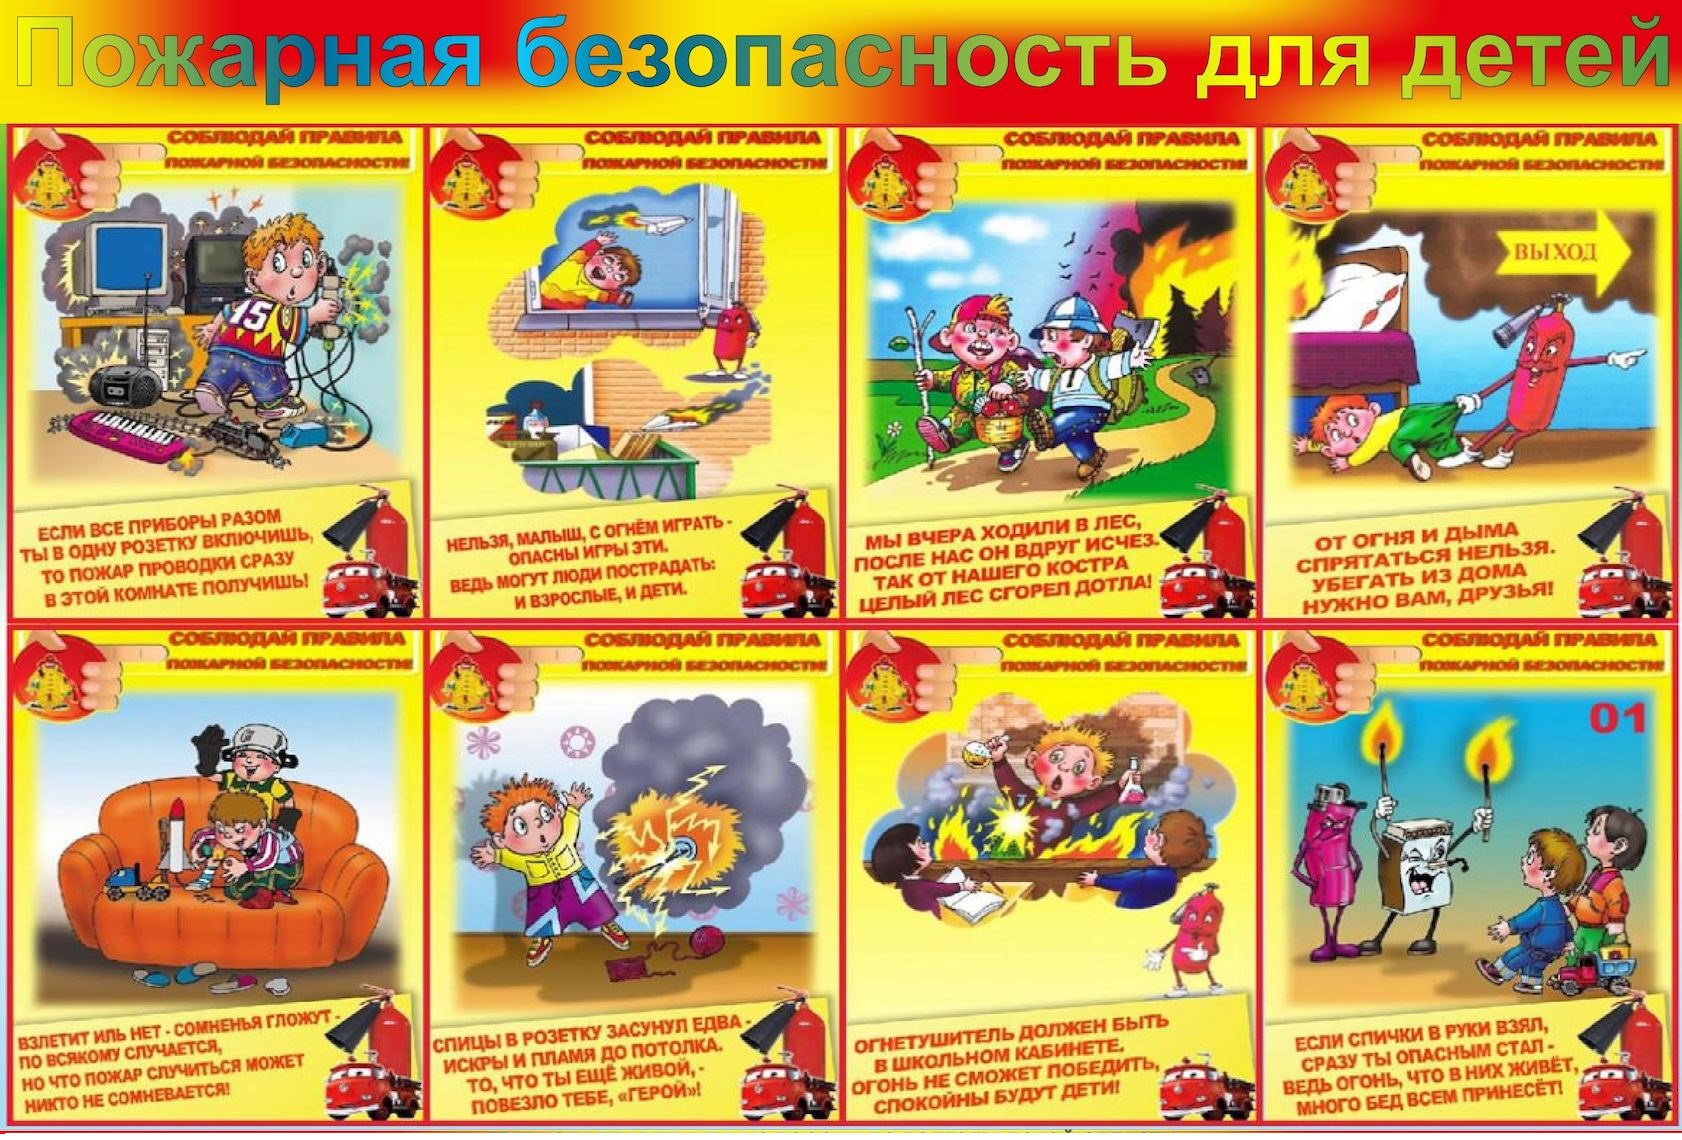 Правила безопасности для учащихся. Памятка правил пожарной безопасности для детей. ТБ по пожарной безопасности для детей. Правила пожарной безопасноят.